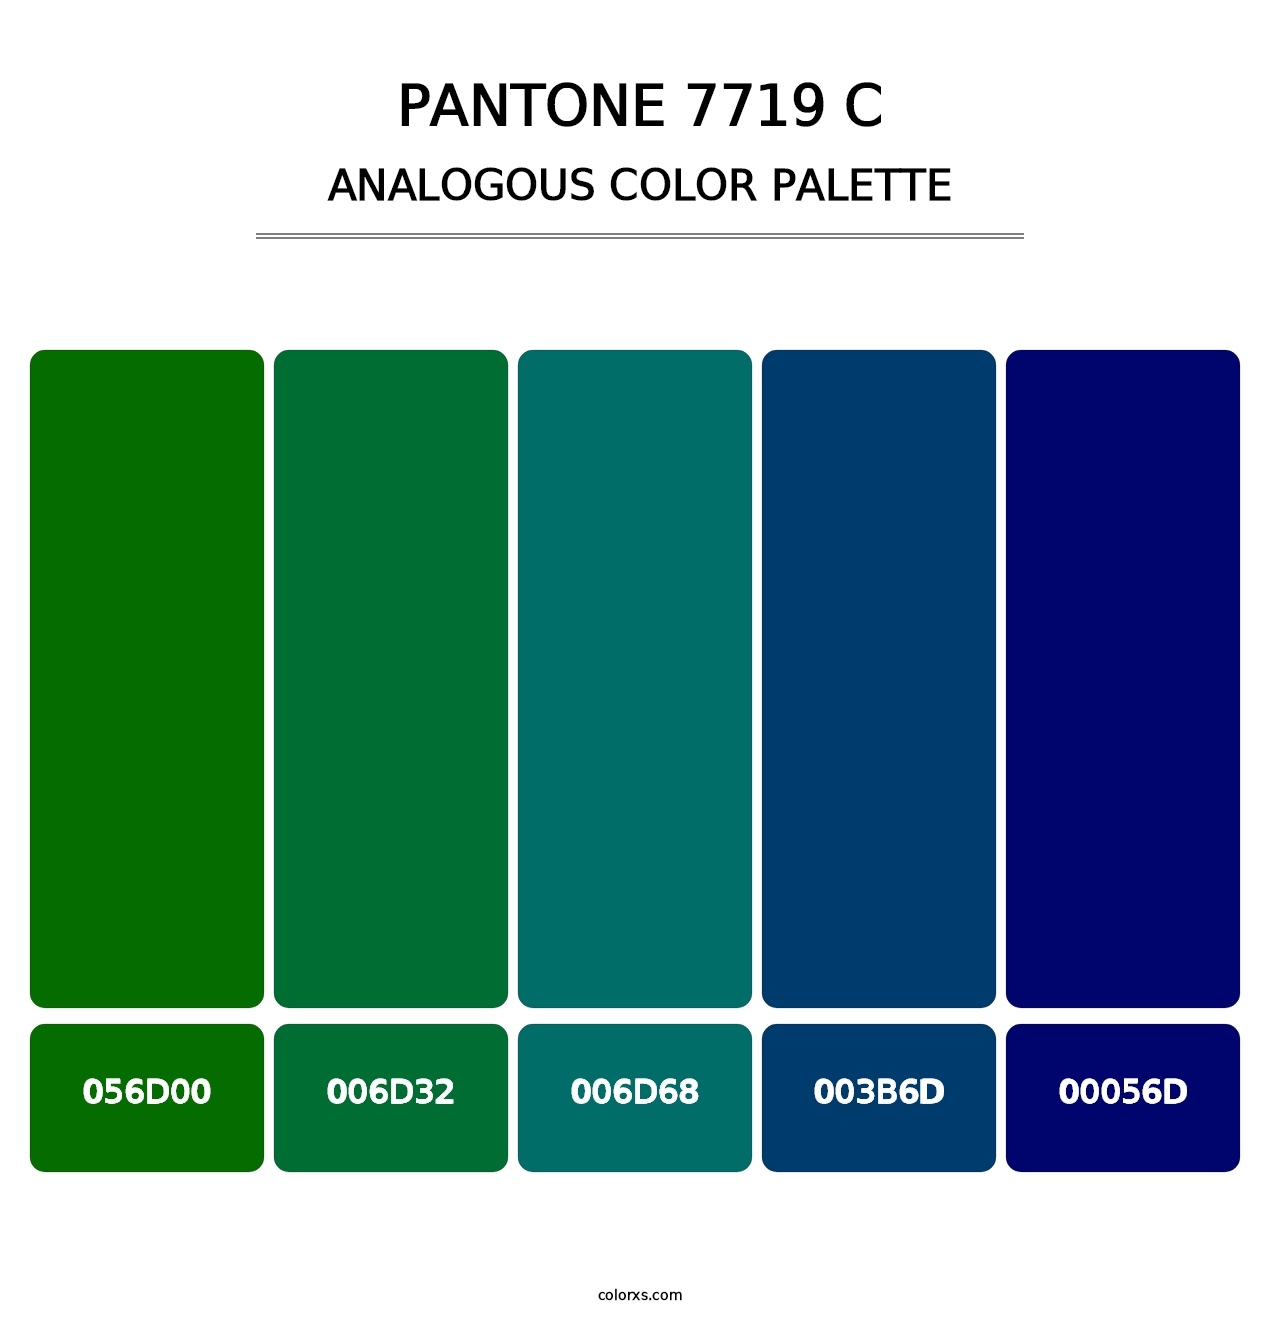 PANTONE 7719 C - Analogous Color Palette